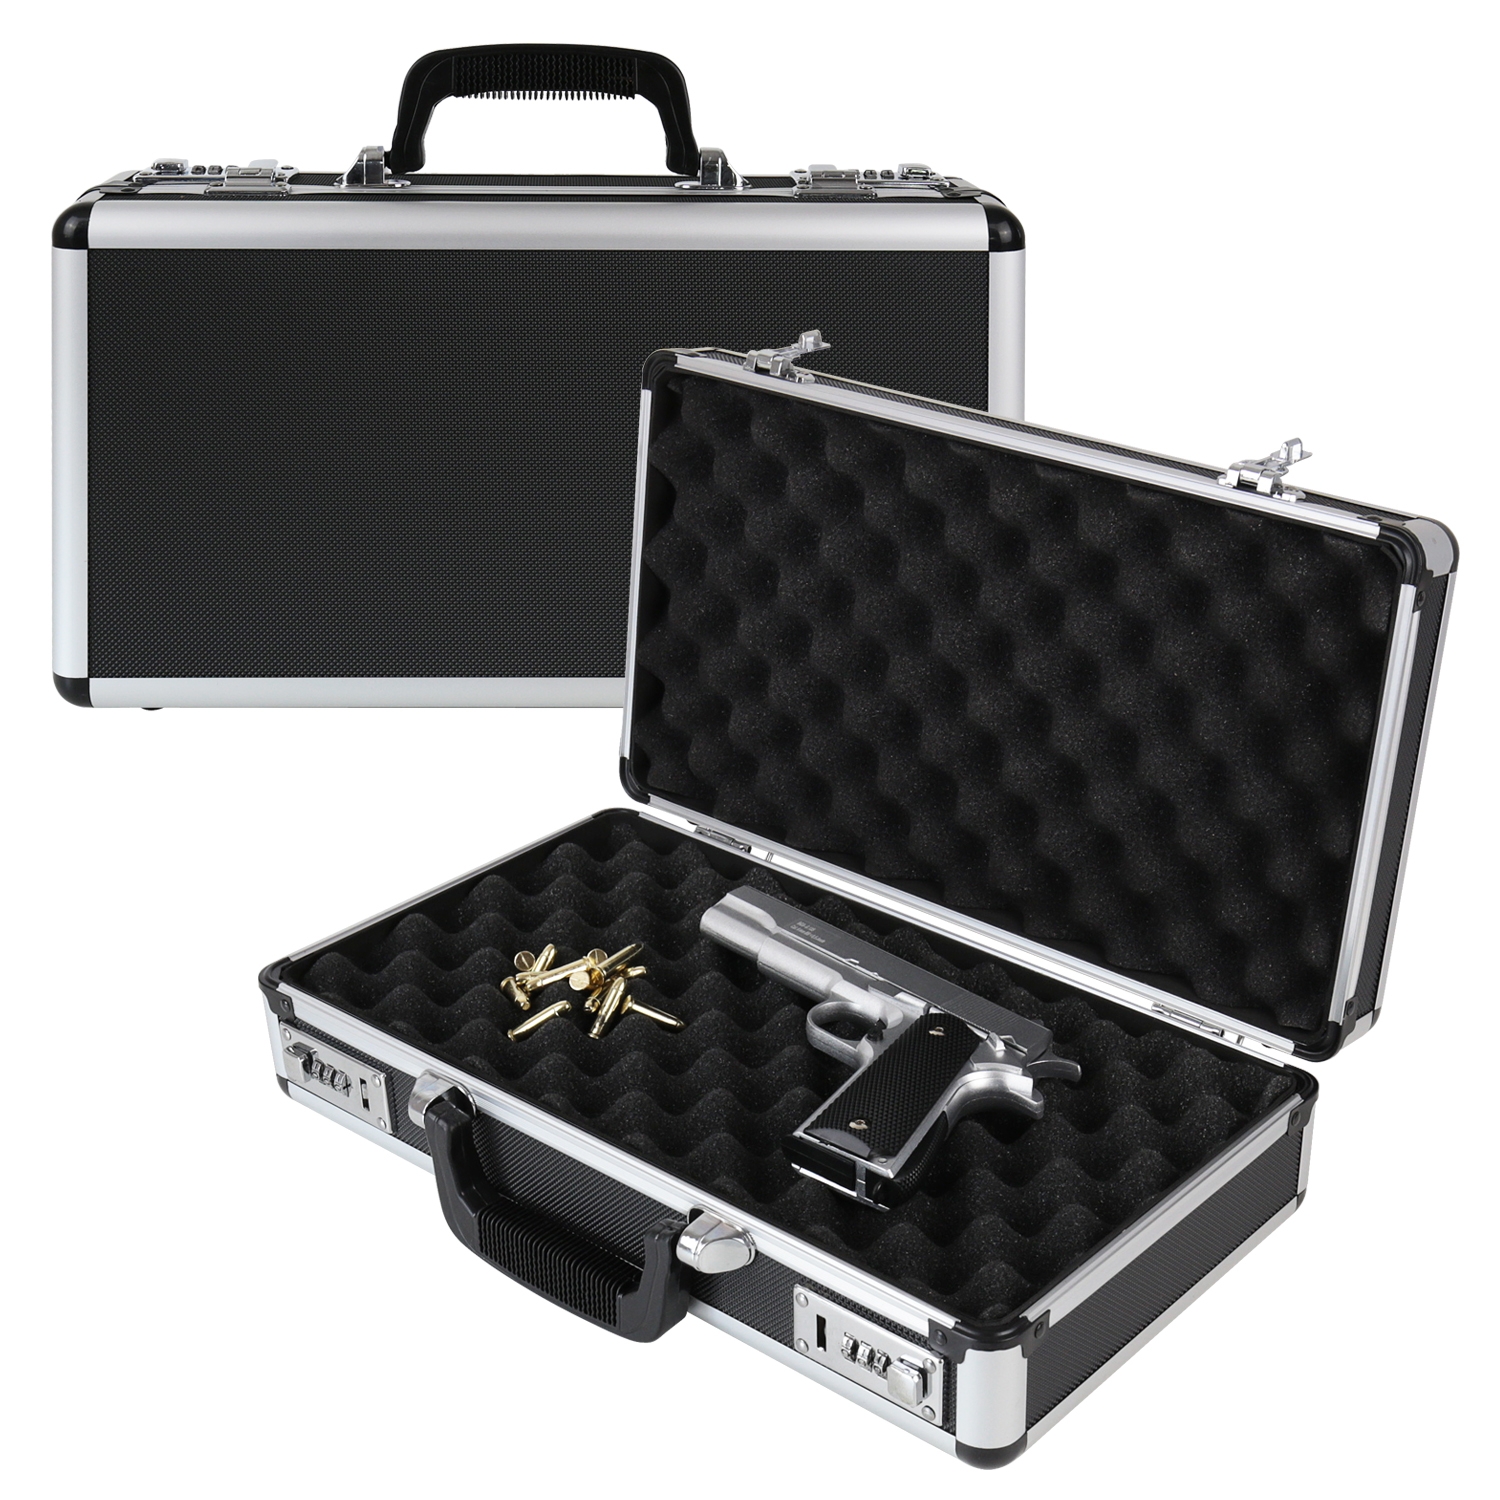 Alu Pistolenkoffer oder Kurzwaffenkoffer mit Zahlenschloss von HMF mit den Maßen 42 x 26 x 12 cm